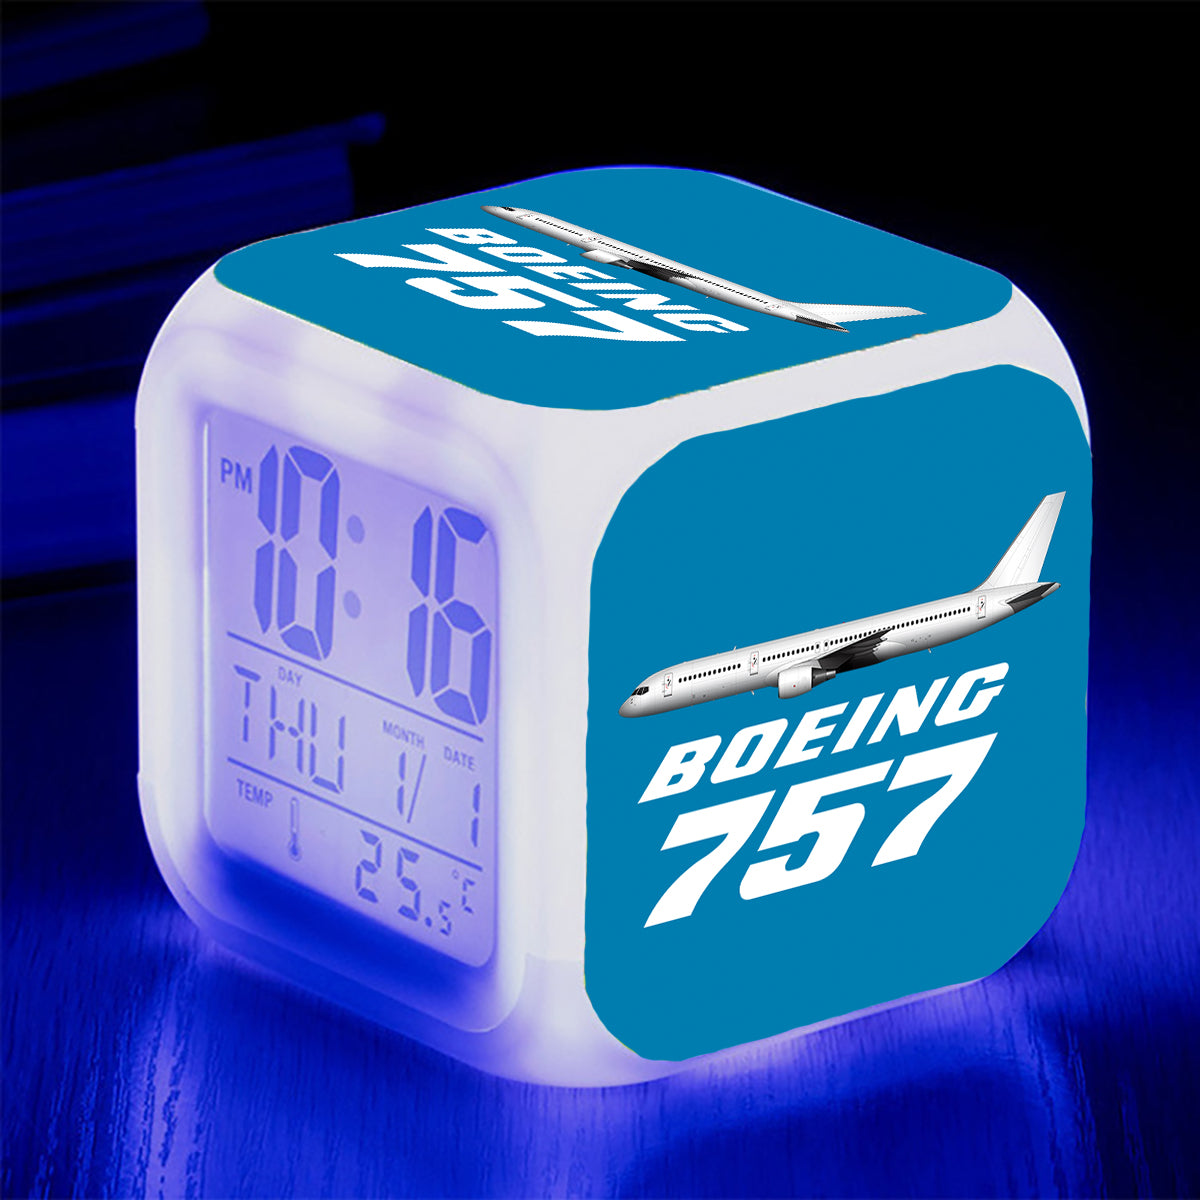 The Boeing 757 Designed "7 Colour" Digital Alarm Clock